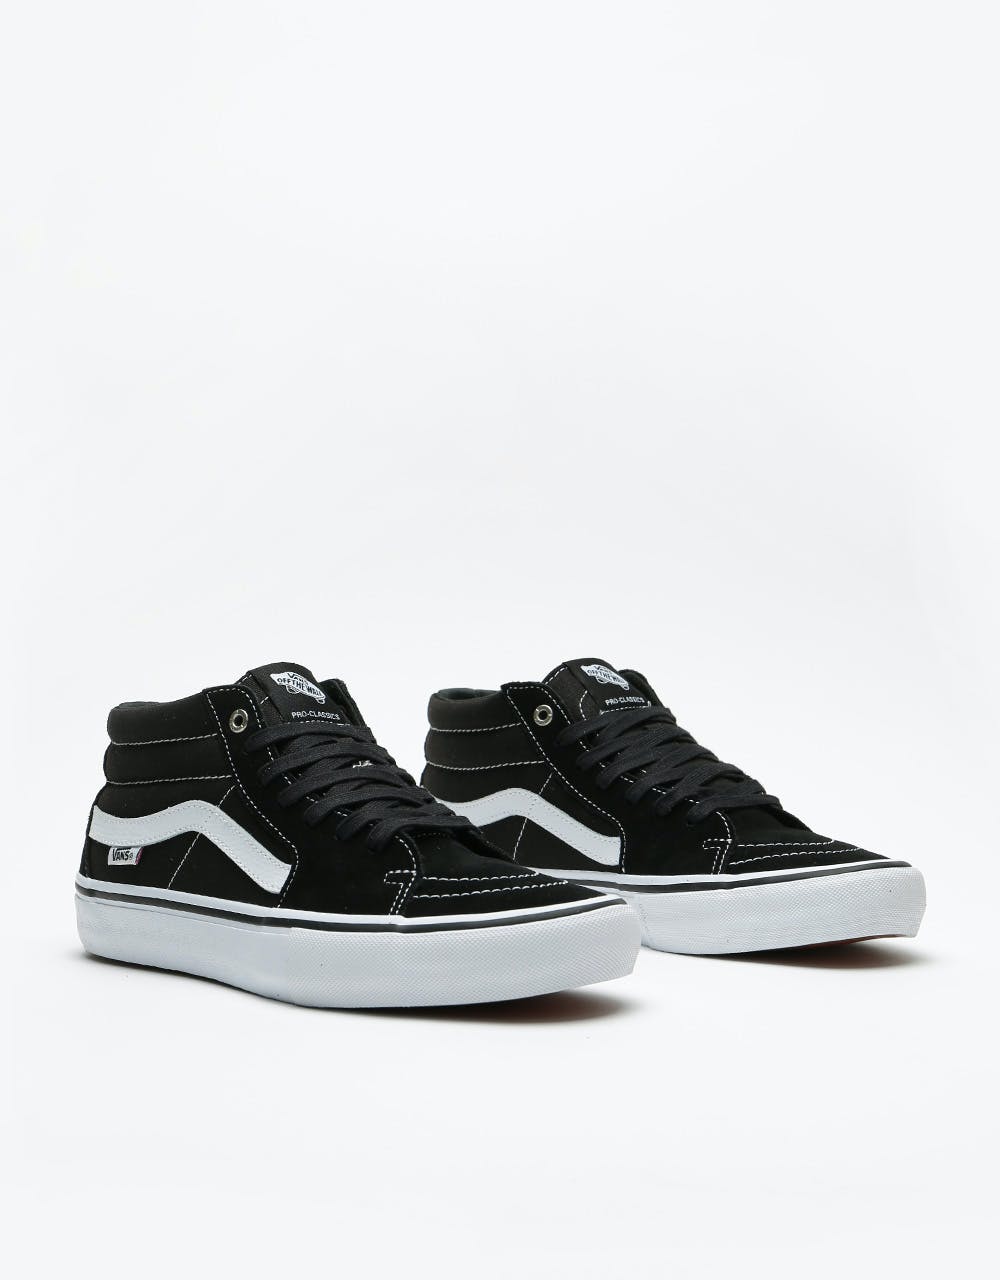 Vans Sk8-Mid Pro Skate Shoes - Black/White